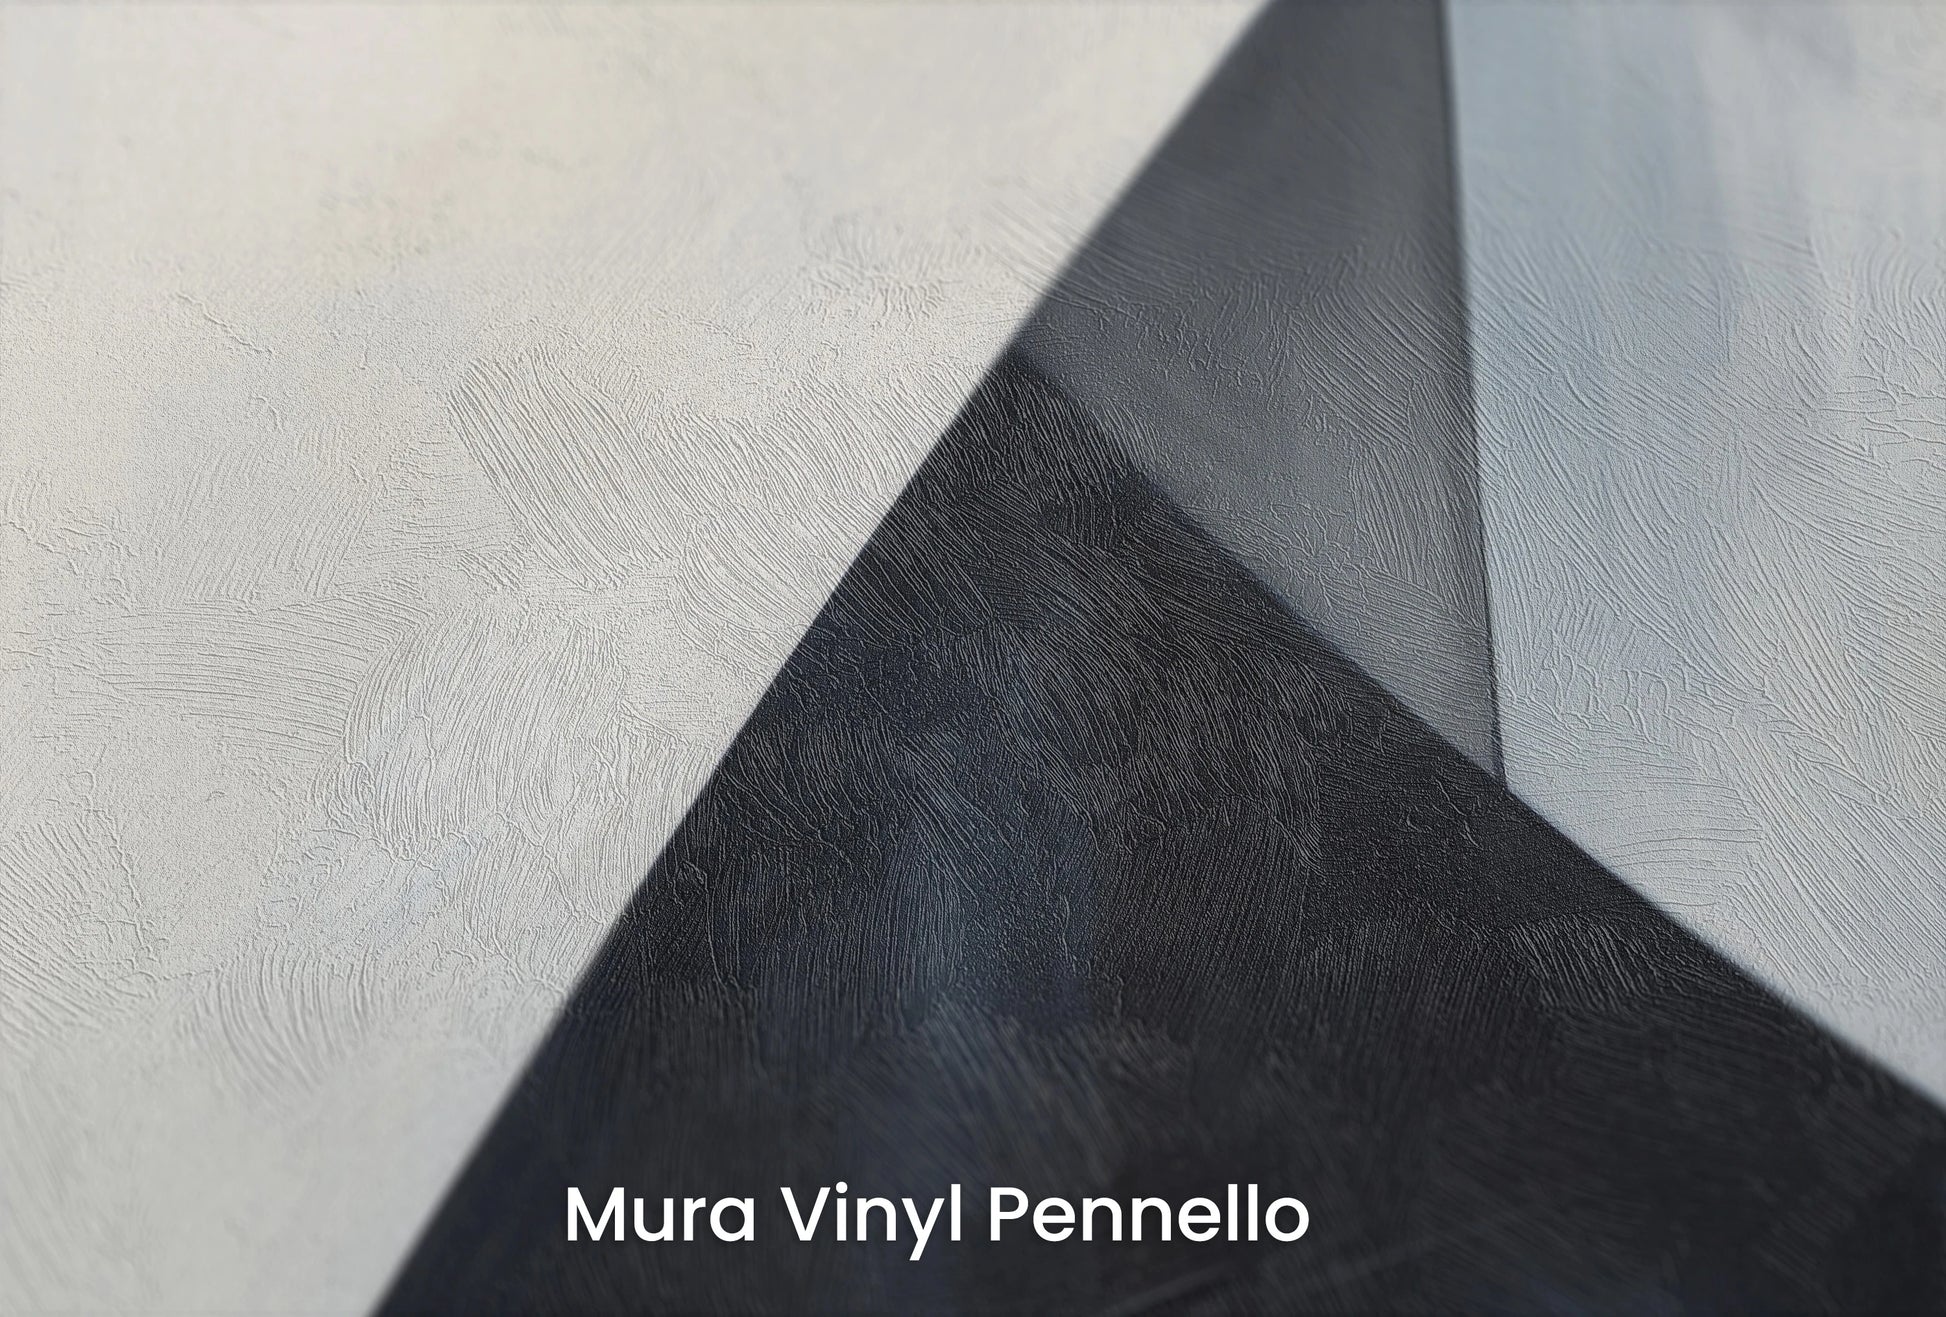 Zbliżenie na artystyczną fototapetę o nazwie Monochrome Triangle na podłożu Mura Vinyl Pennello - faktura pociągnięć pędzla malarskiego.